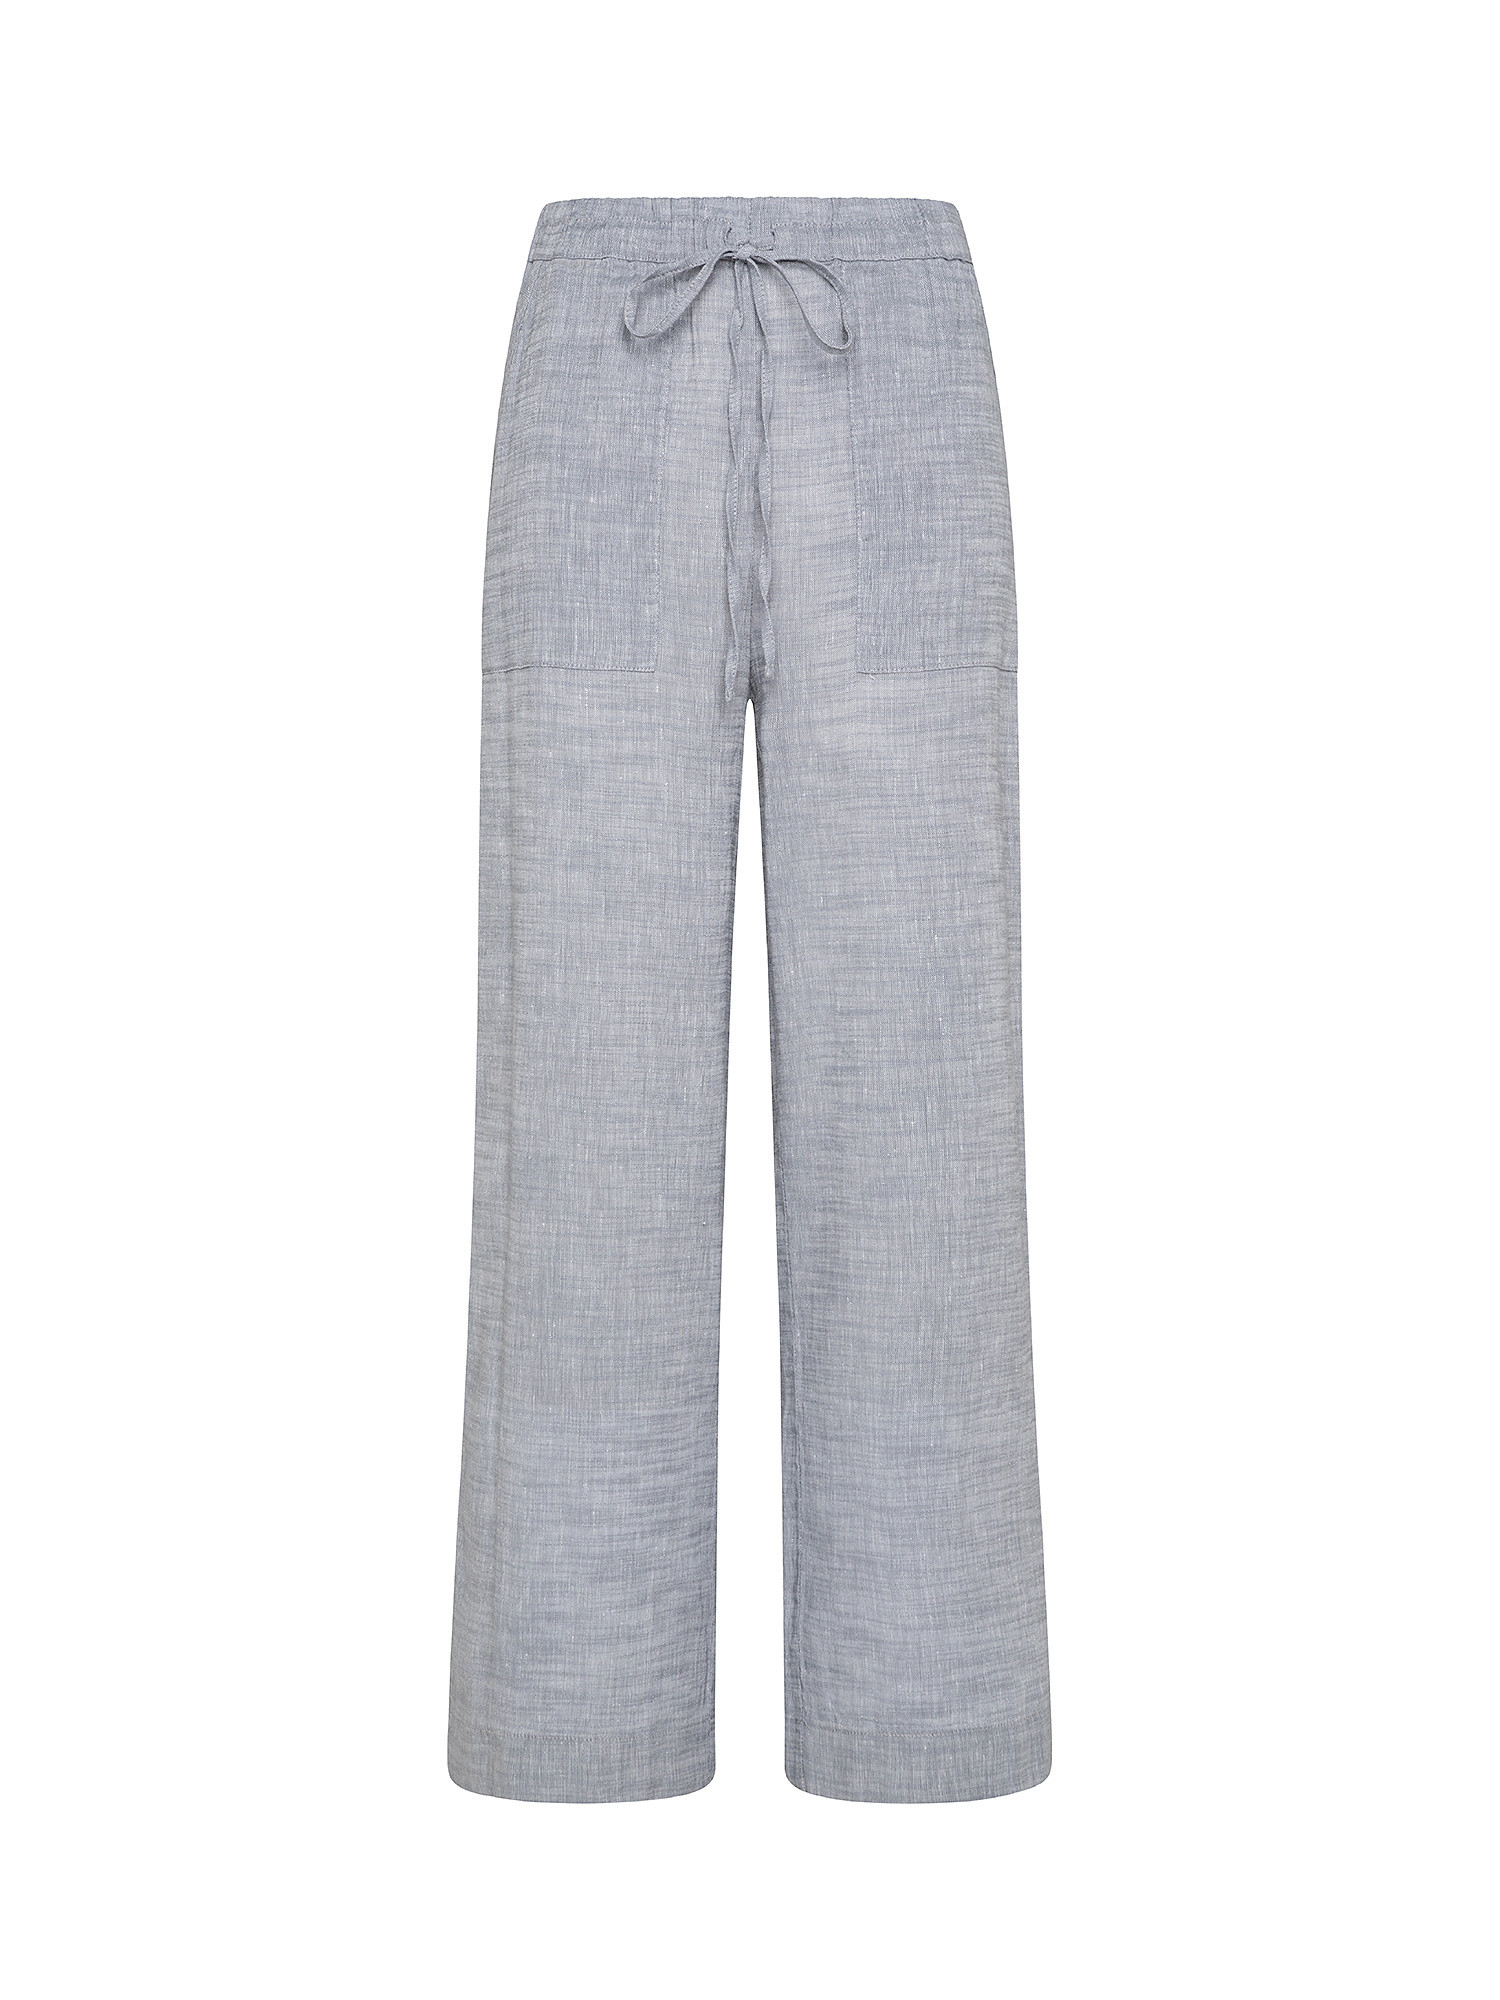 Pant in linen blend, Light Grey, large image number 0